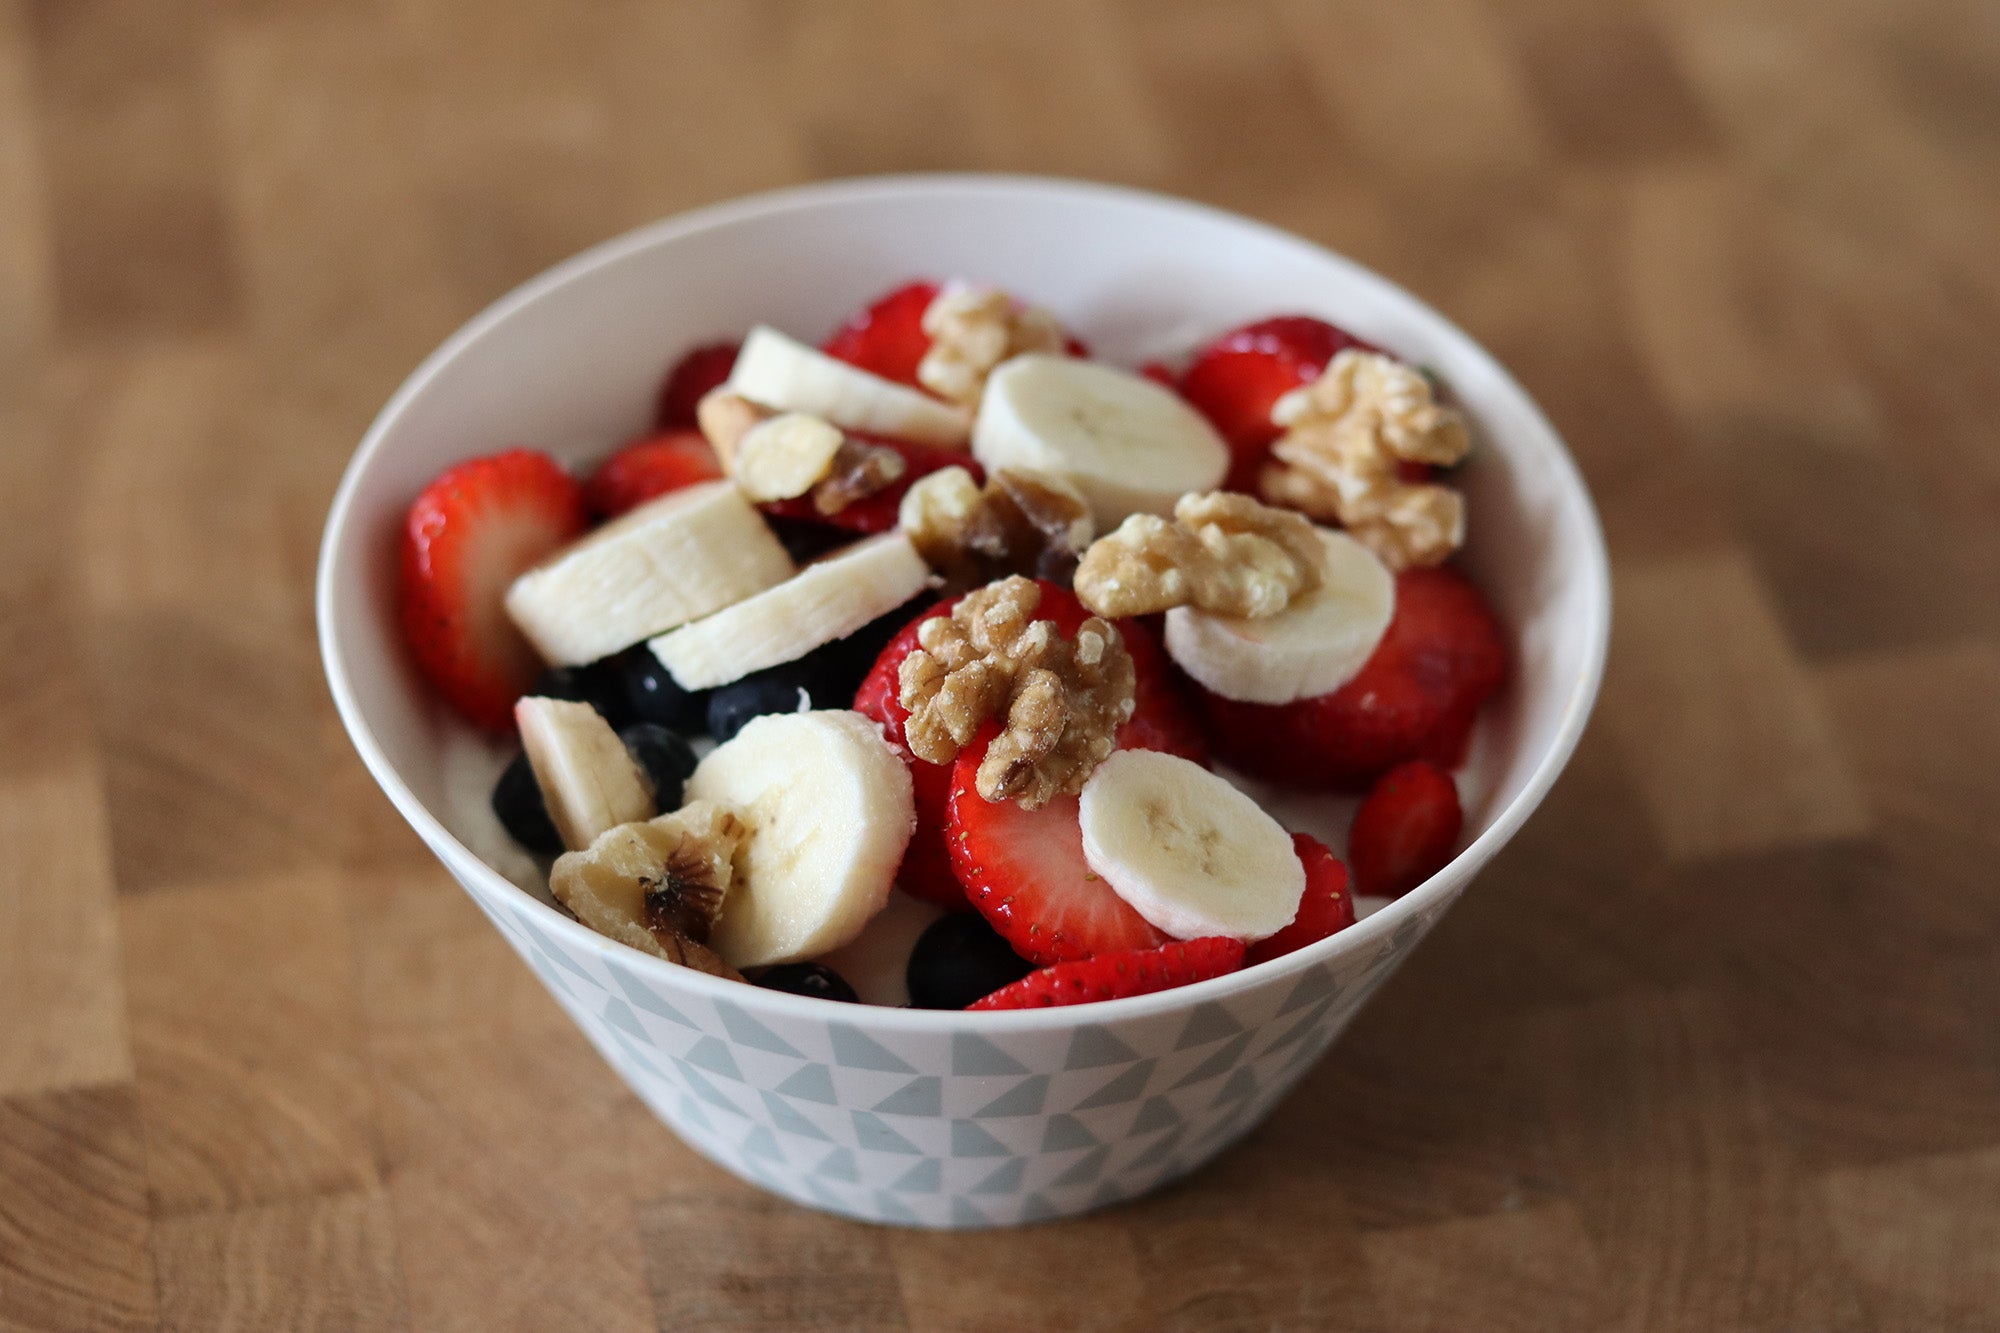 gezond ontbijt met veel eiwitten